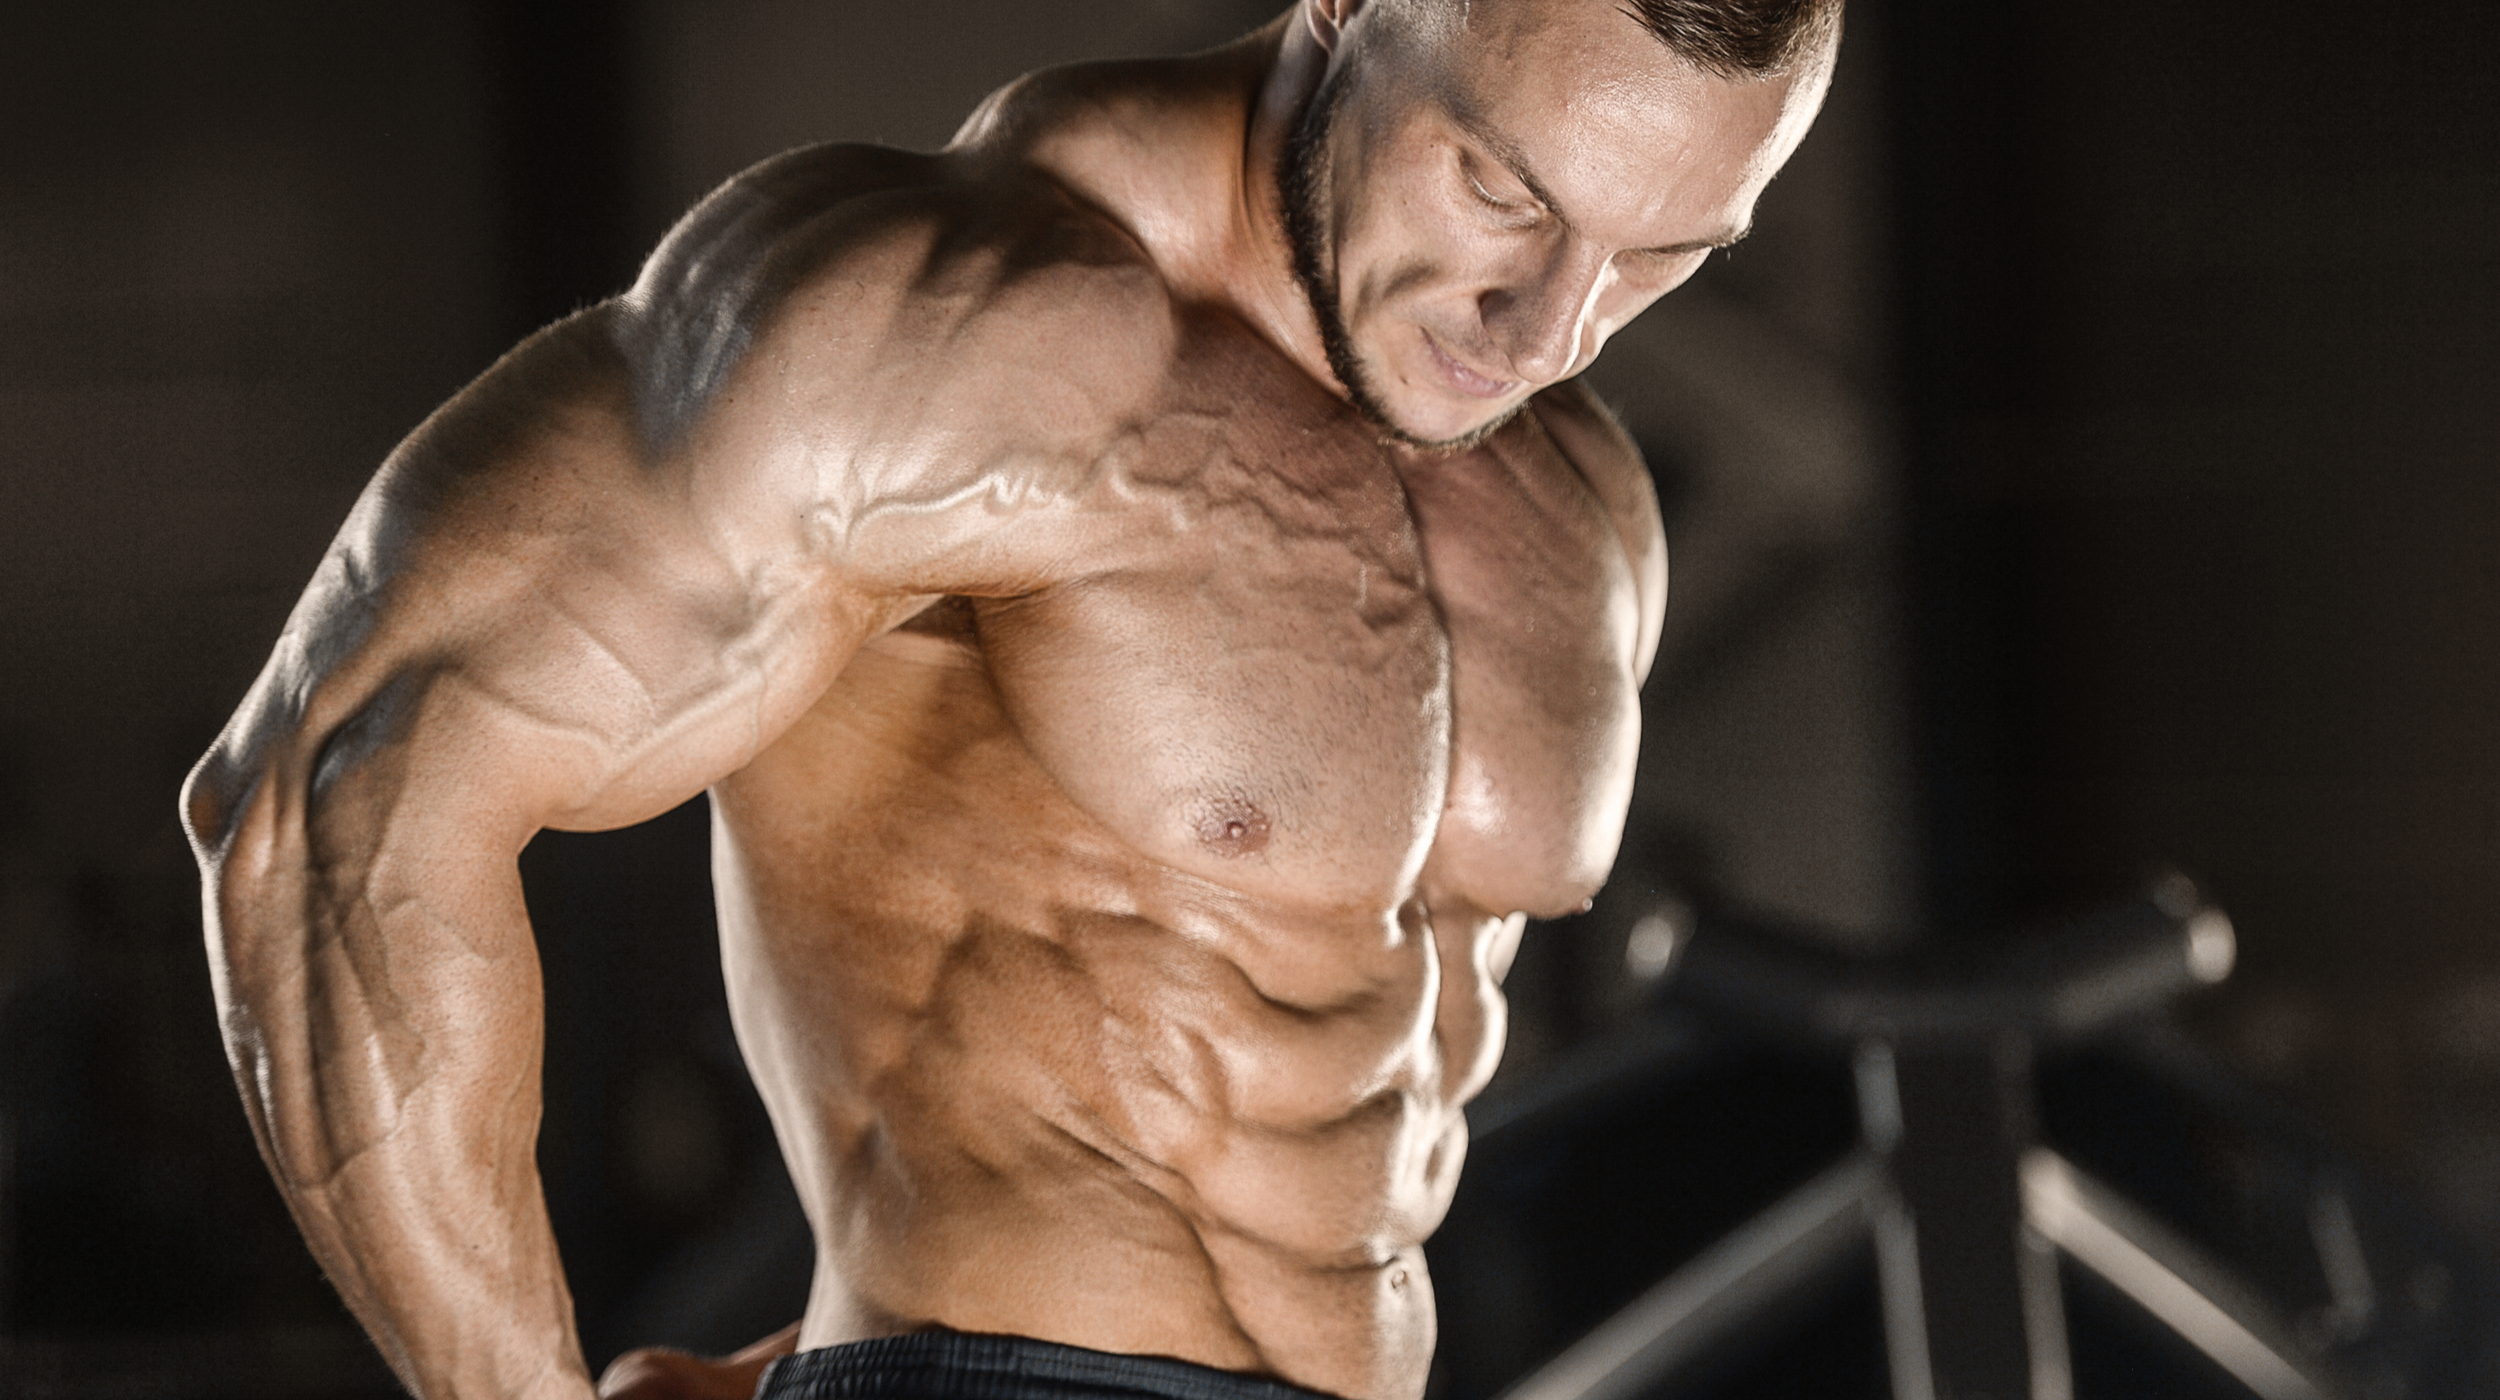 Do all Bodybuilders Take Steroids?